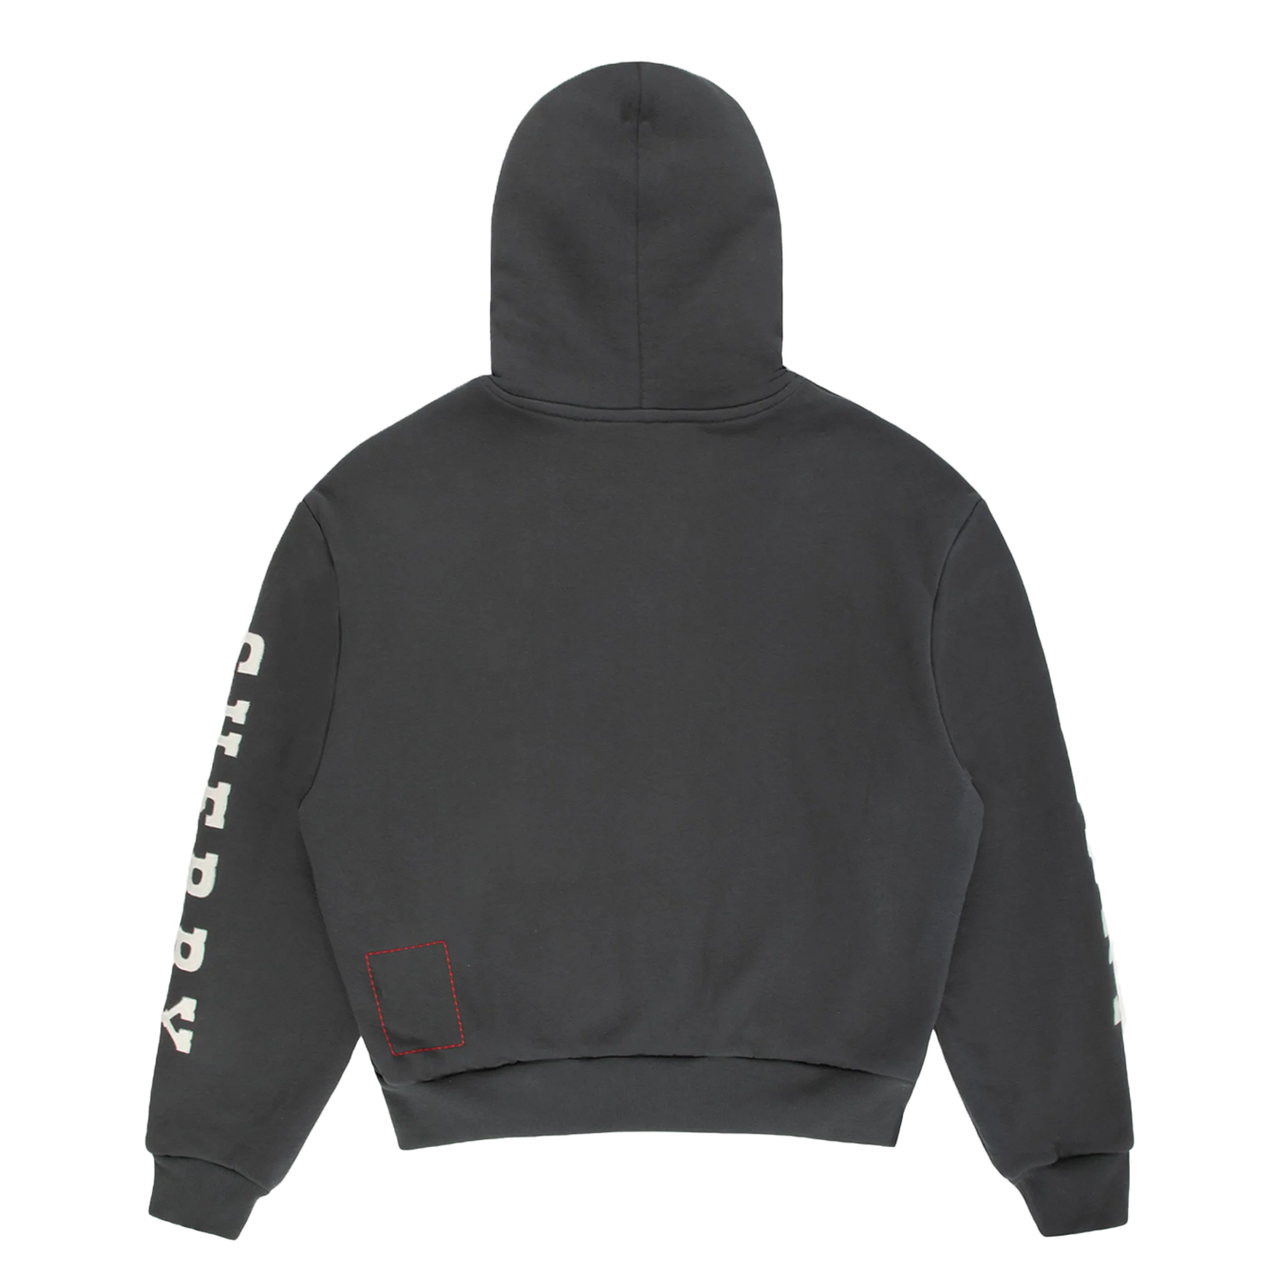 Cherry LA Thermal Zip-Up Sweatshirt Black